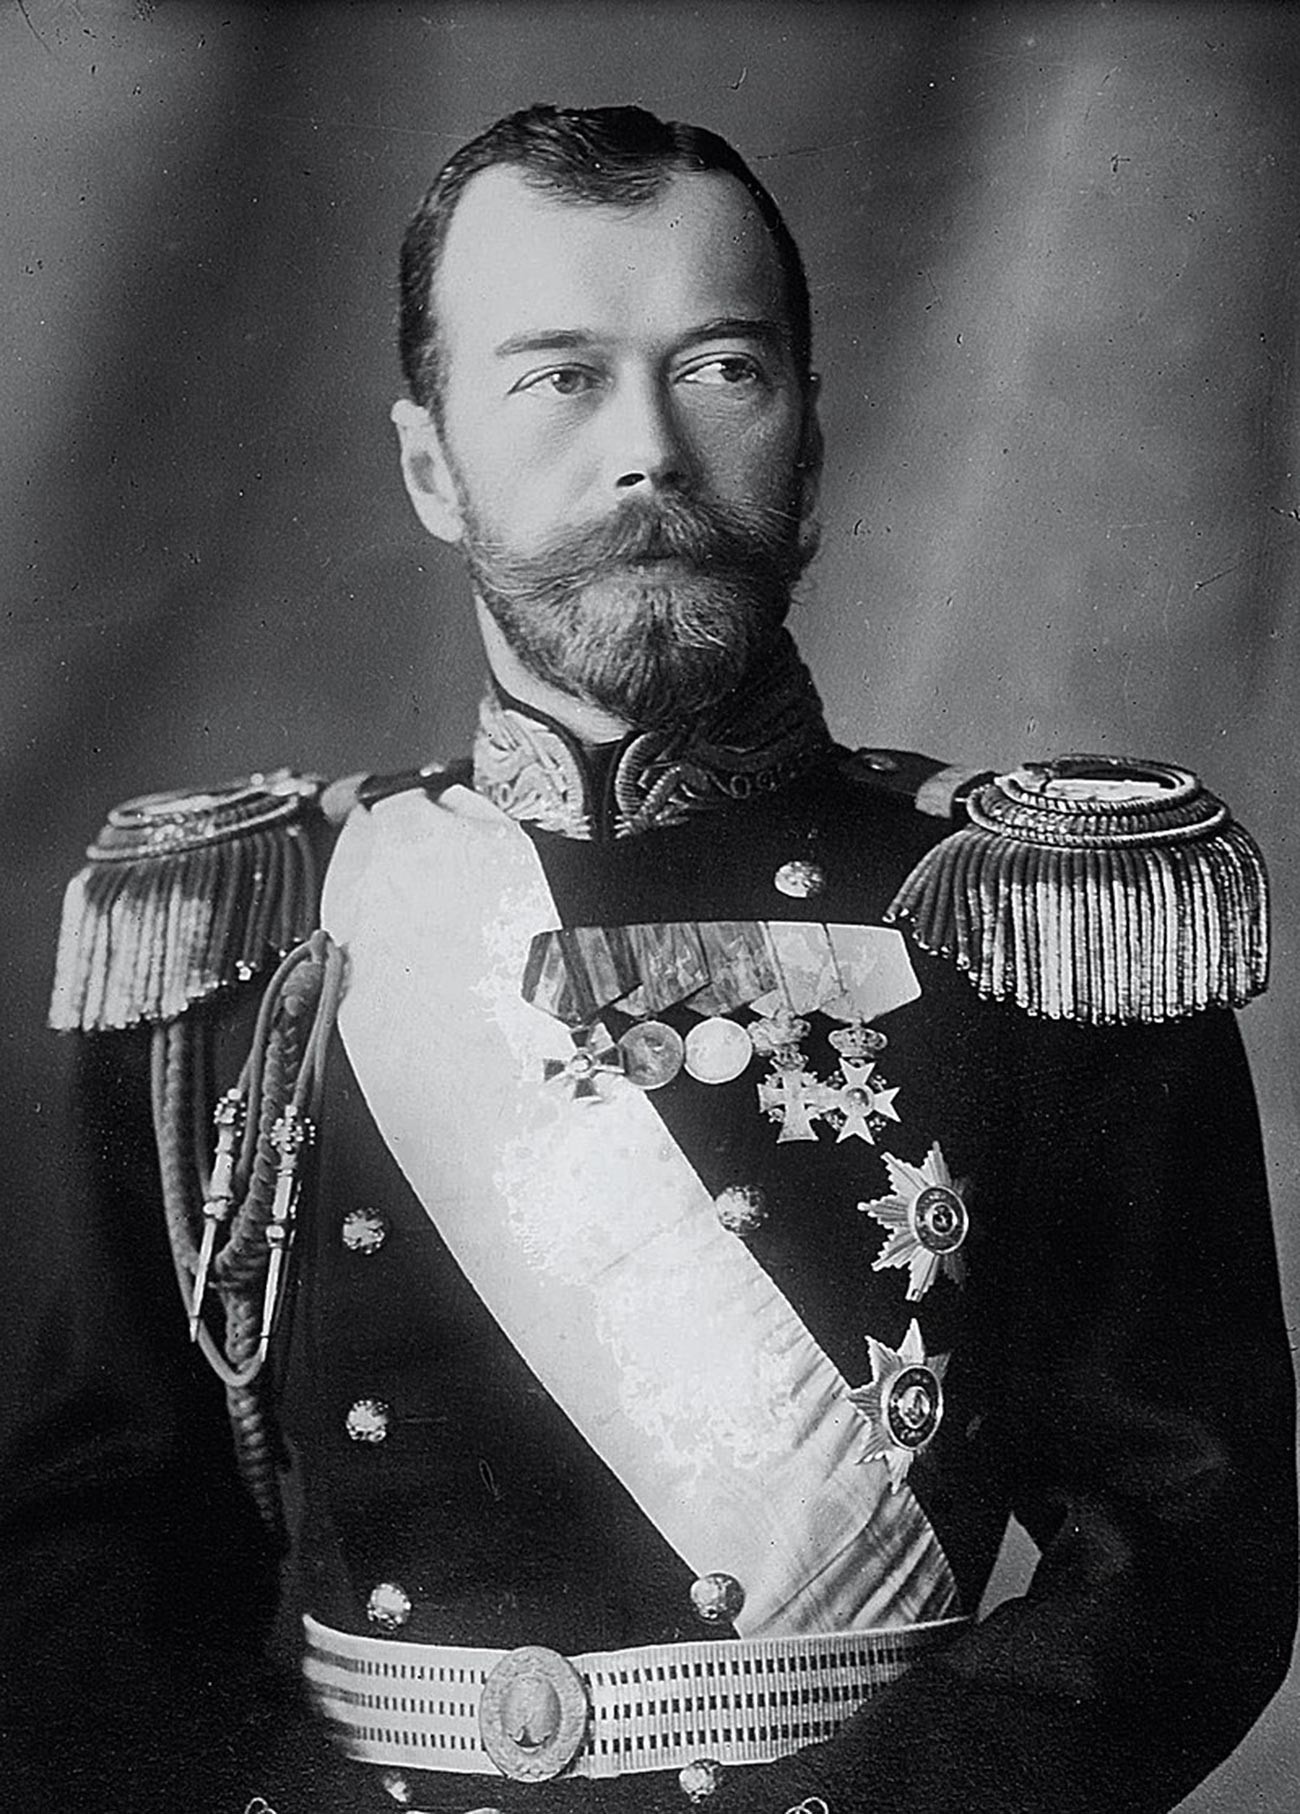 Portrait of Tsar Nicholas II.